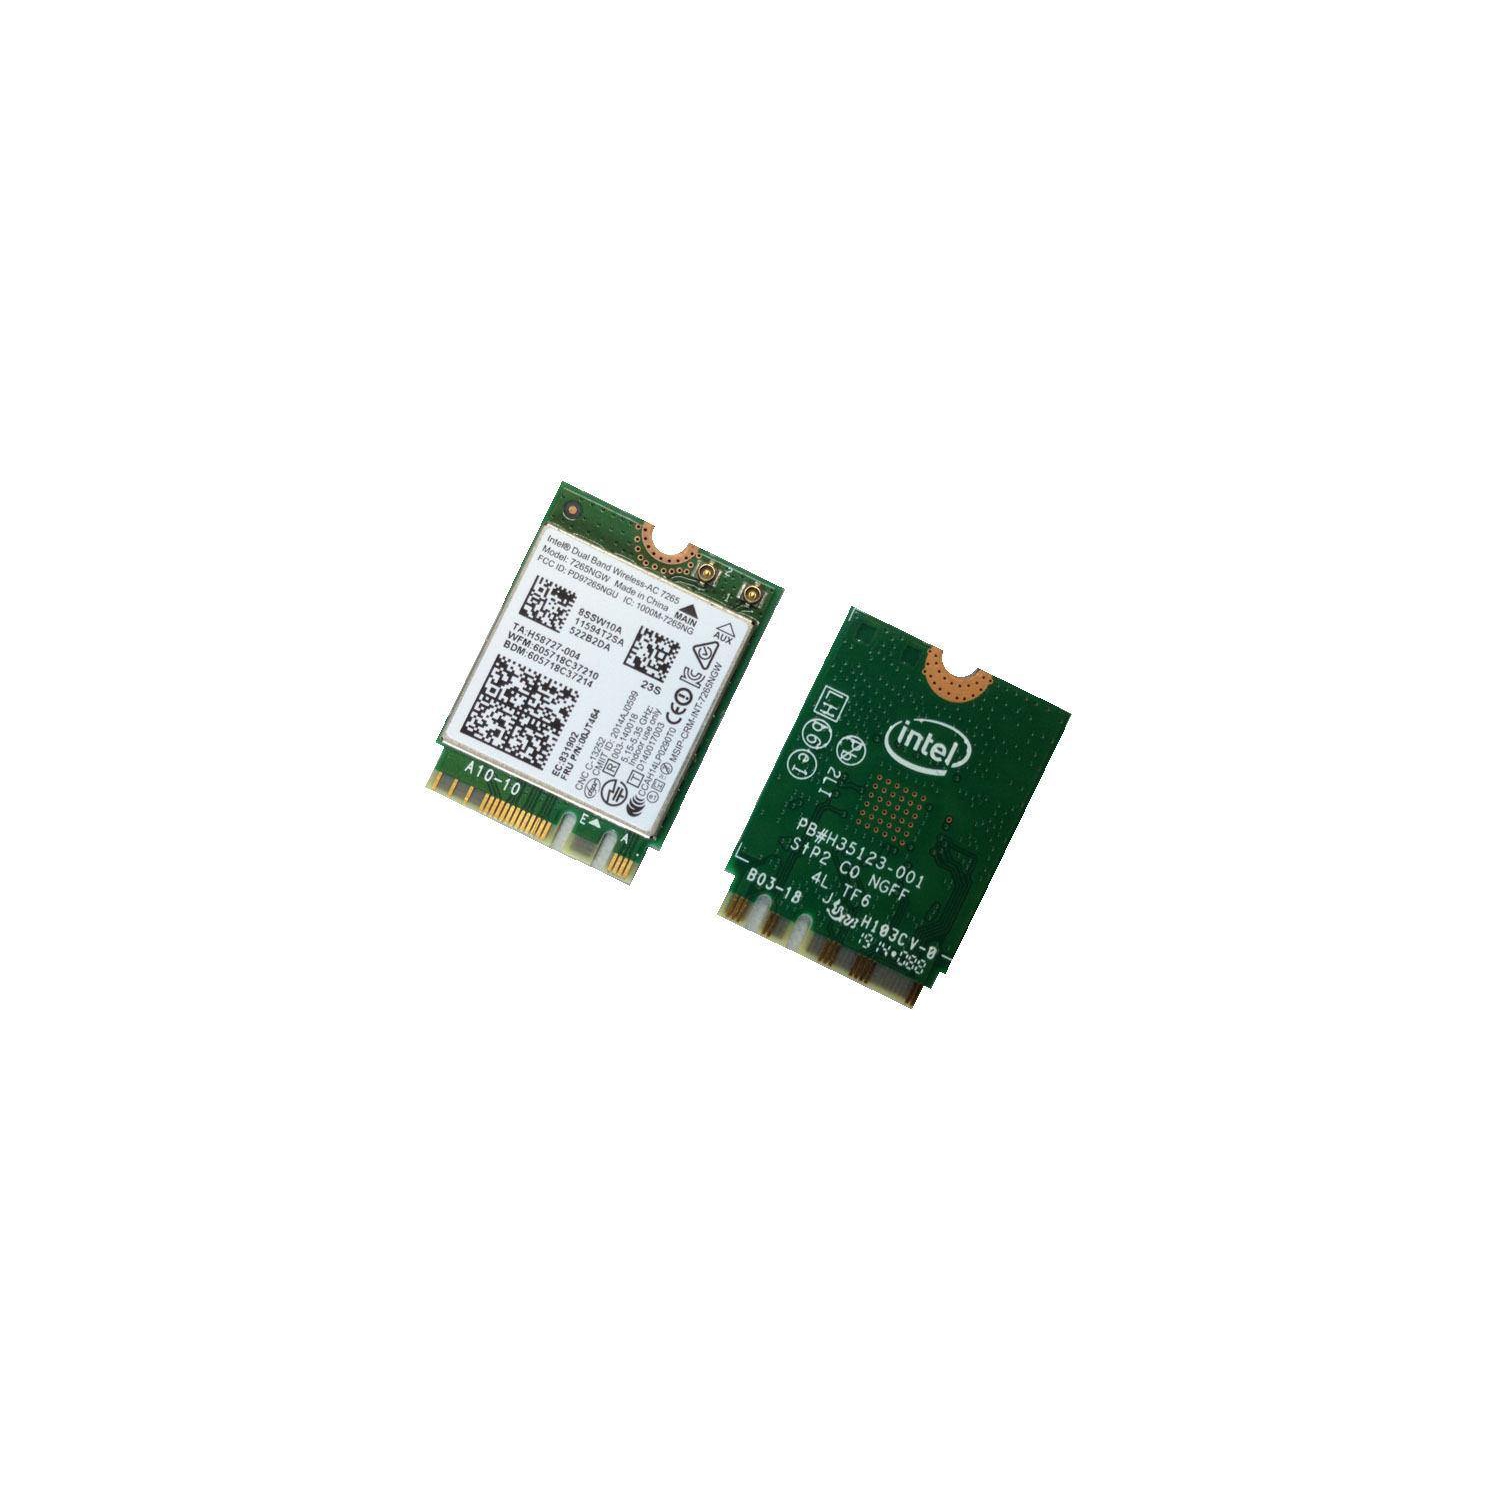 New Genuine Lenovo Intel Dual Band Wireless-AC 7265NGW WiFI Card 00JT467 00JT464